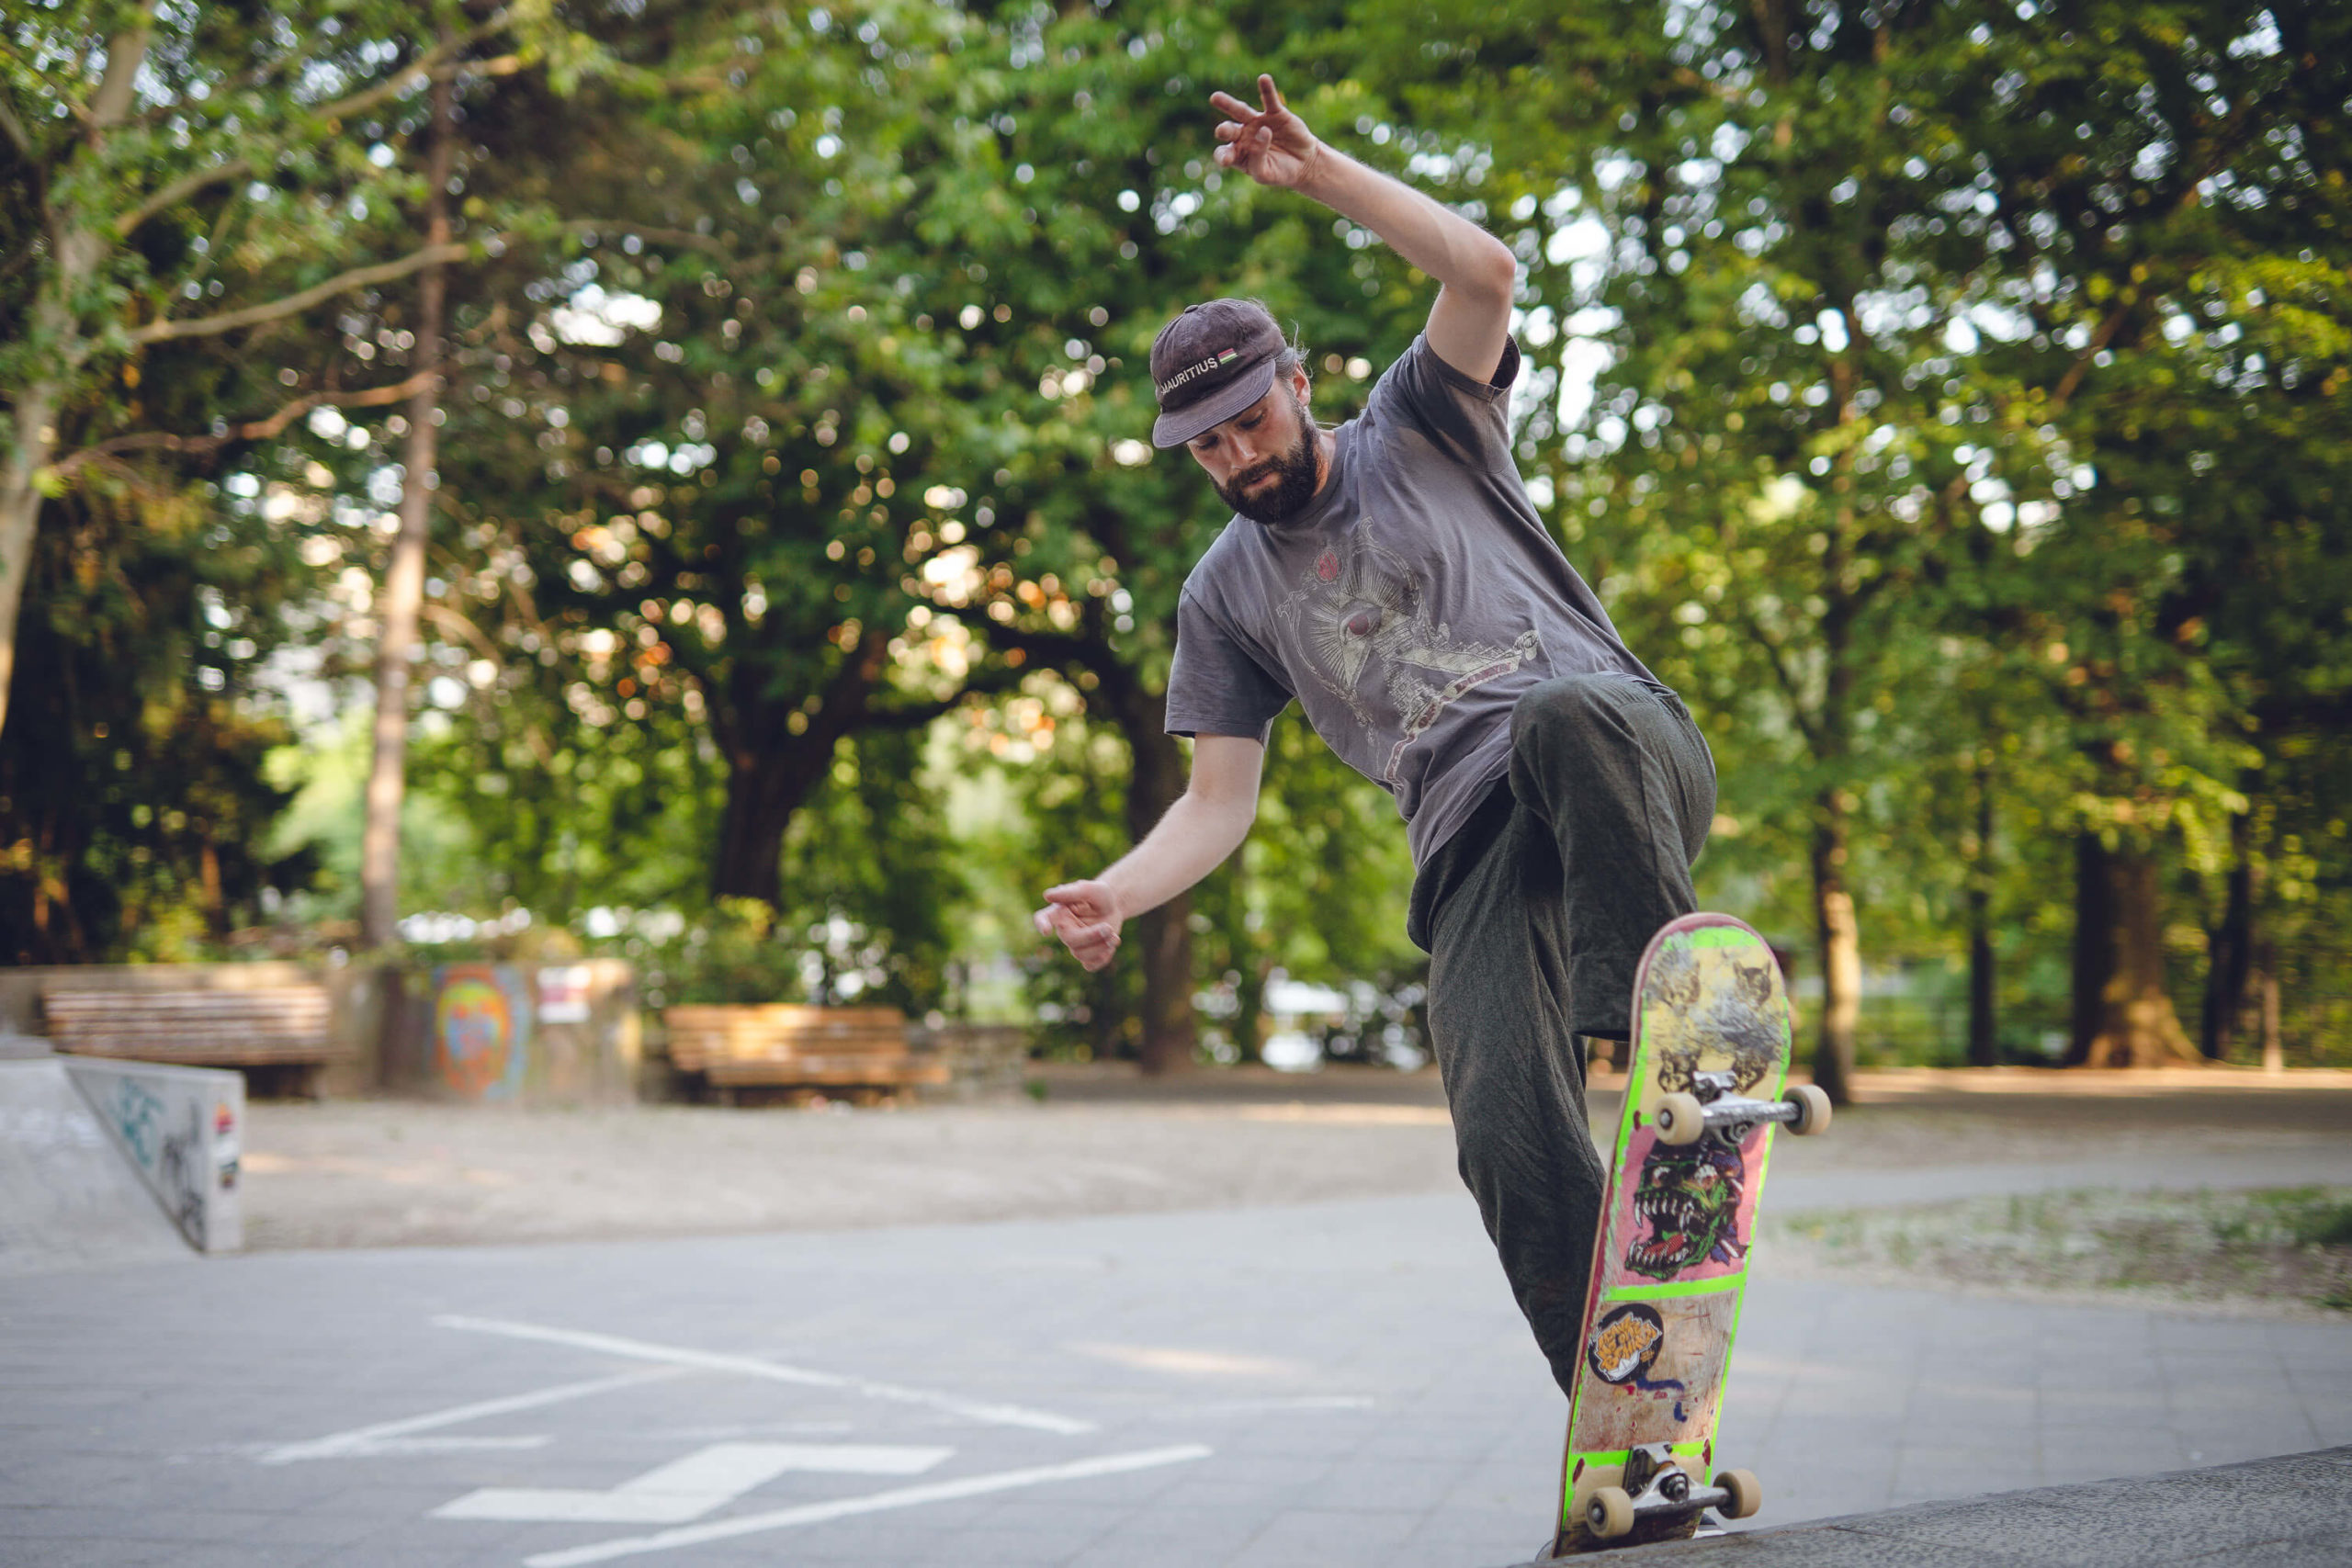 musician Finn of band Auburn light drives skate board in skate park Berlin